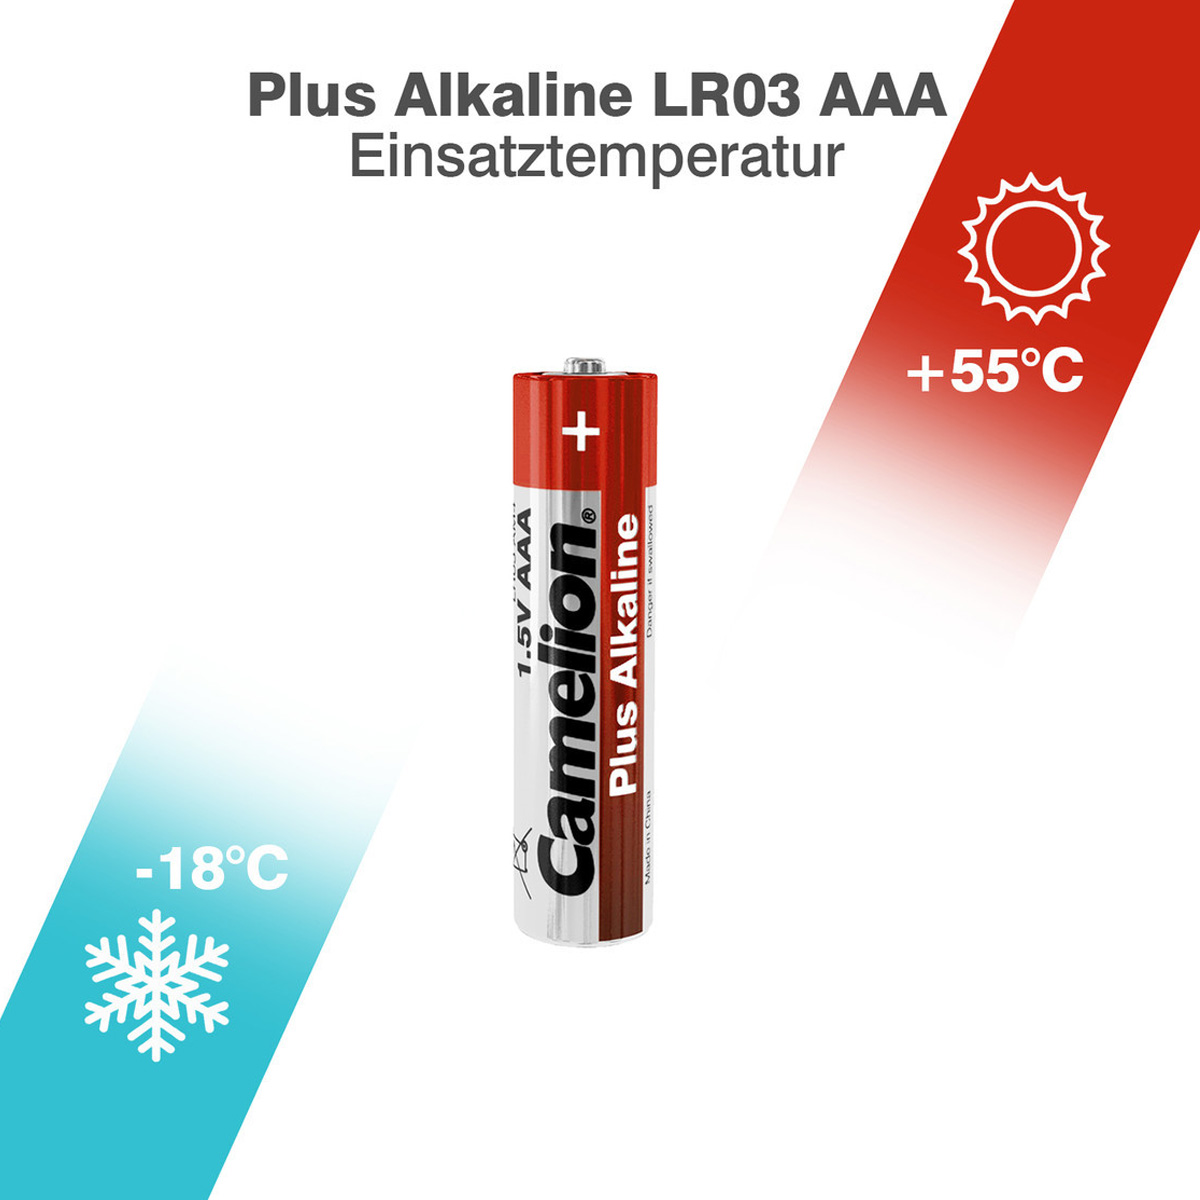 Batterie Mignon AAA LR3 1,5V PLUS Alkaline - Leistung auf Dauer - 3 Stück